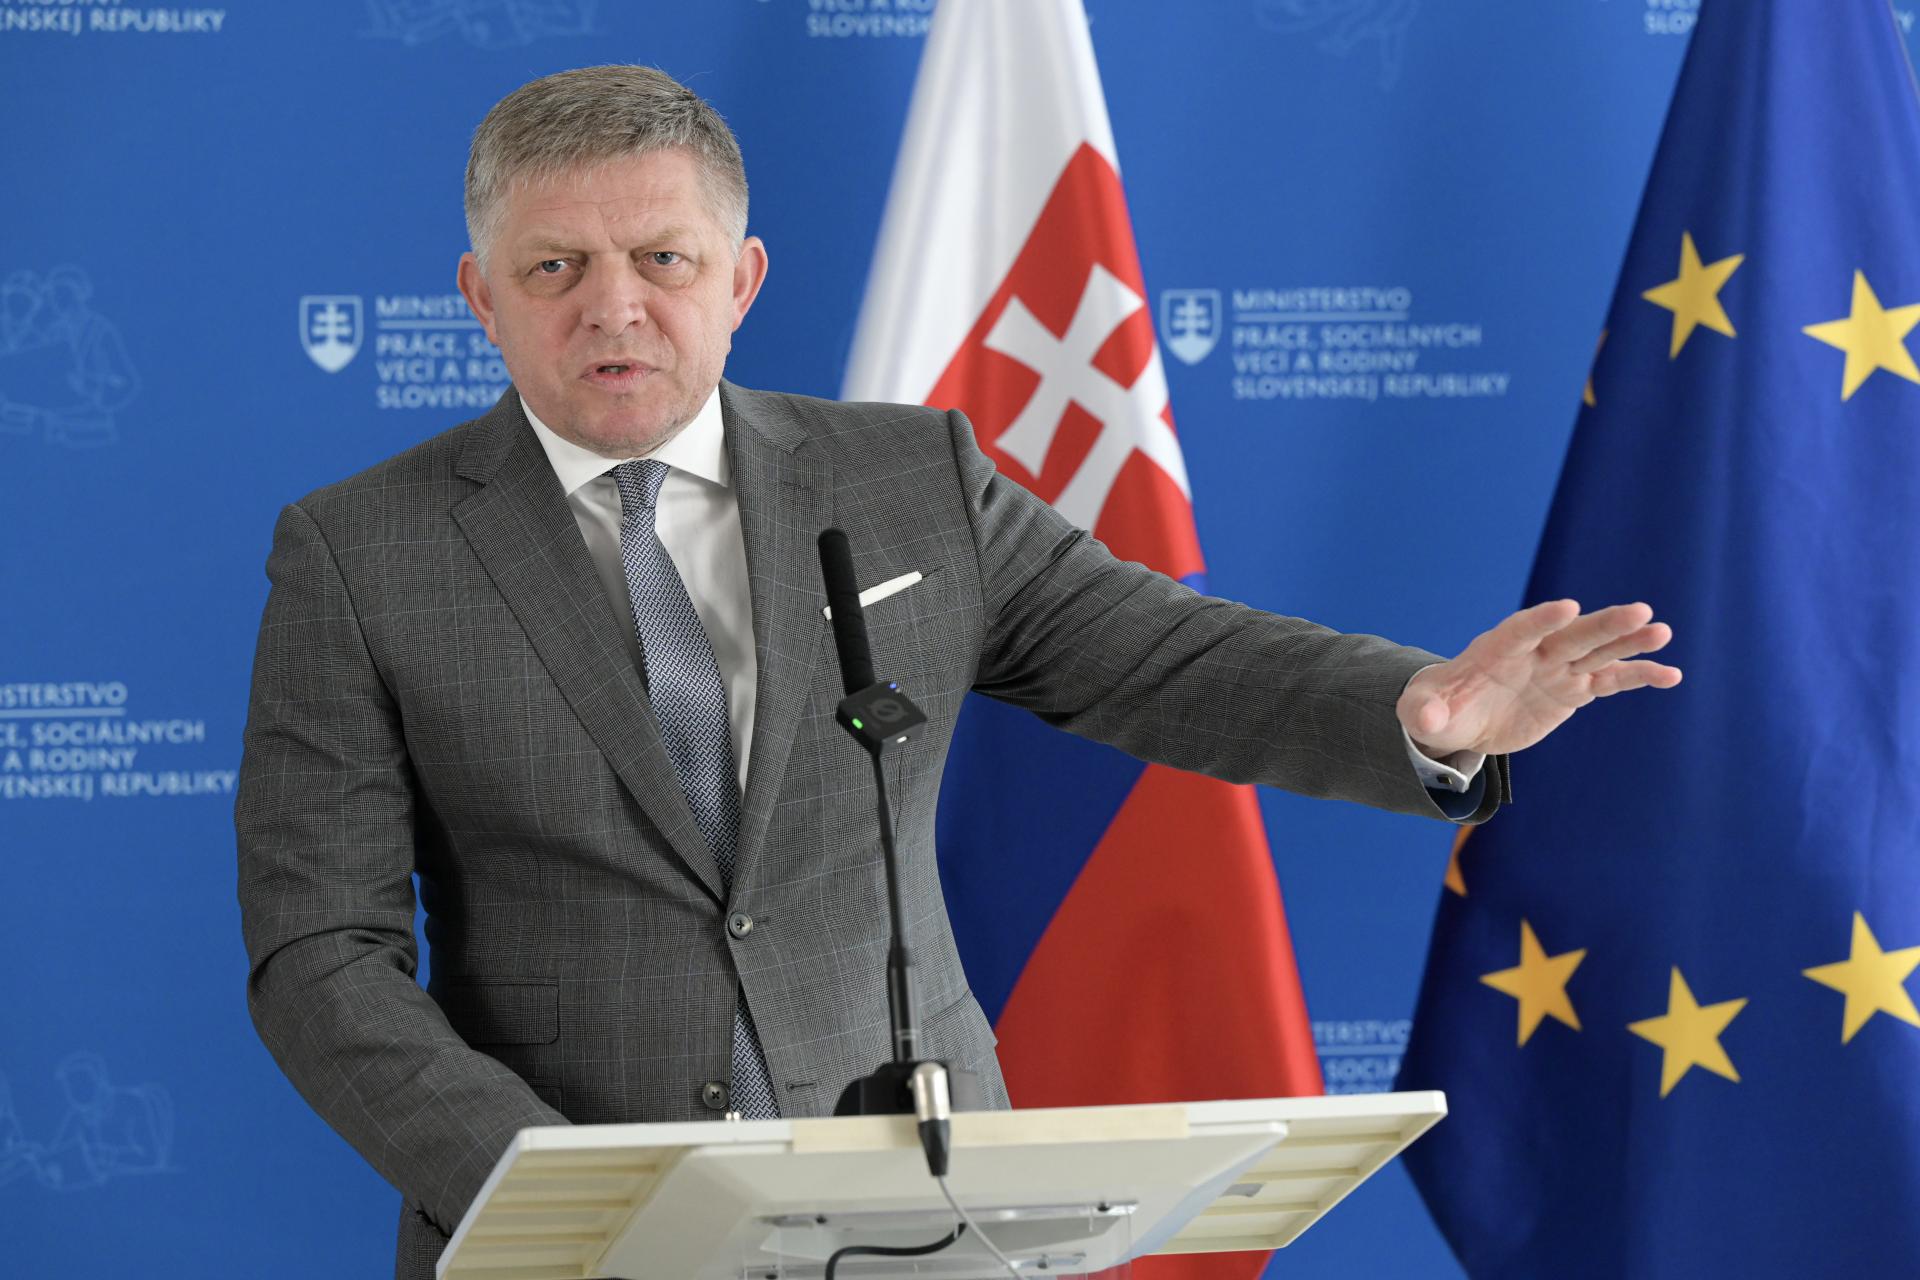 Fico vyzval Šikutu a Mazáka, aby podali disciplinárny návrh na Klimenta a Štifta